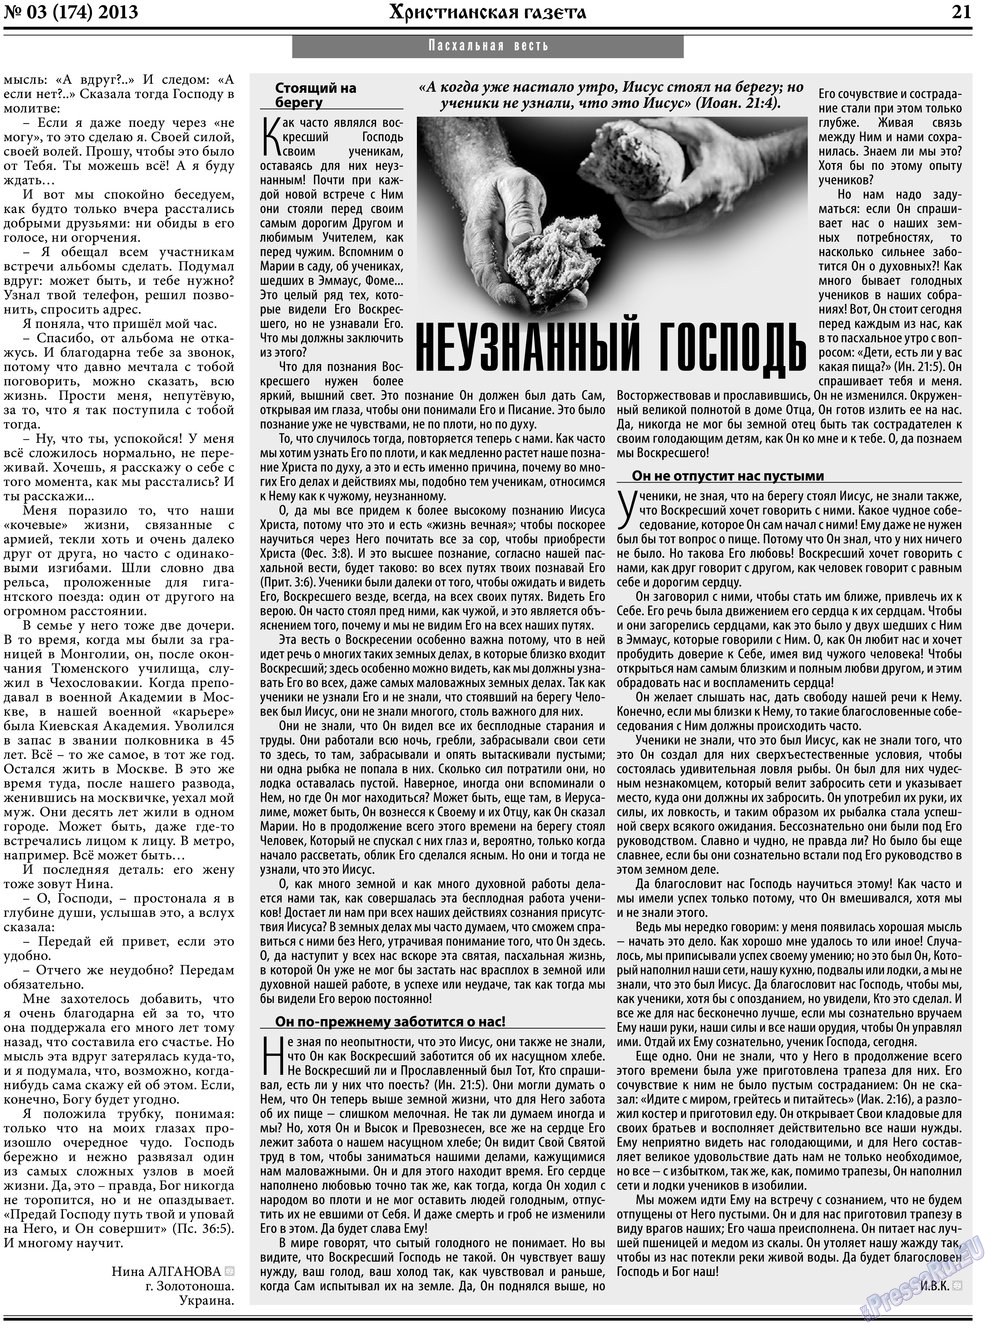 Христианская газета, газета. 2013 №3 стр.29